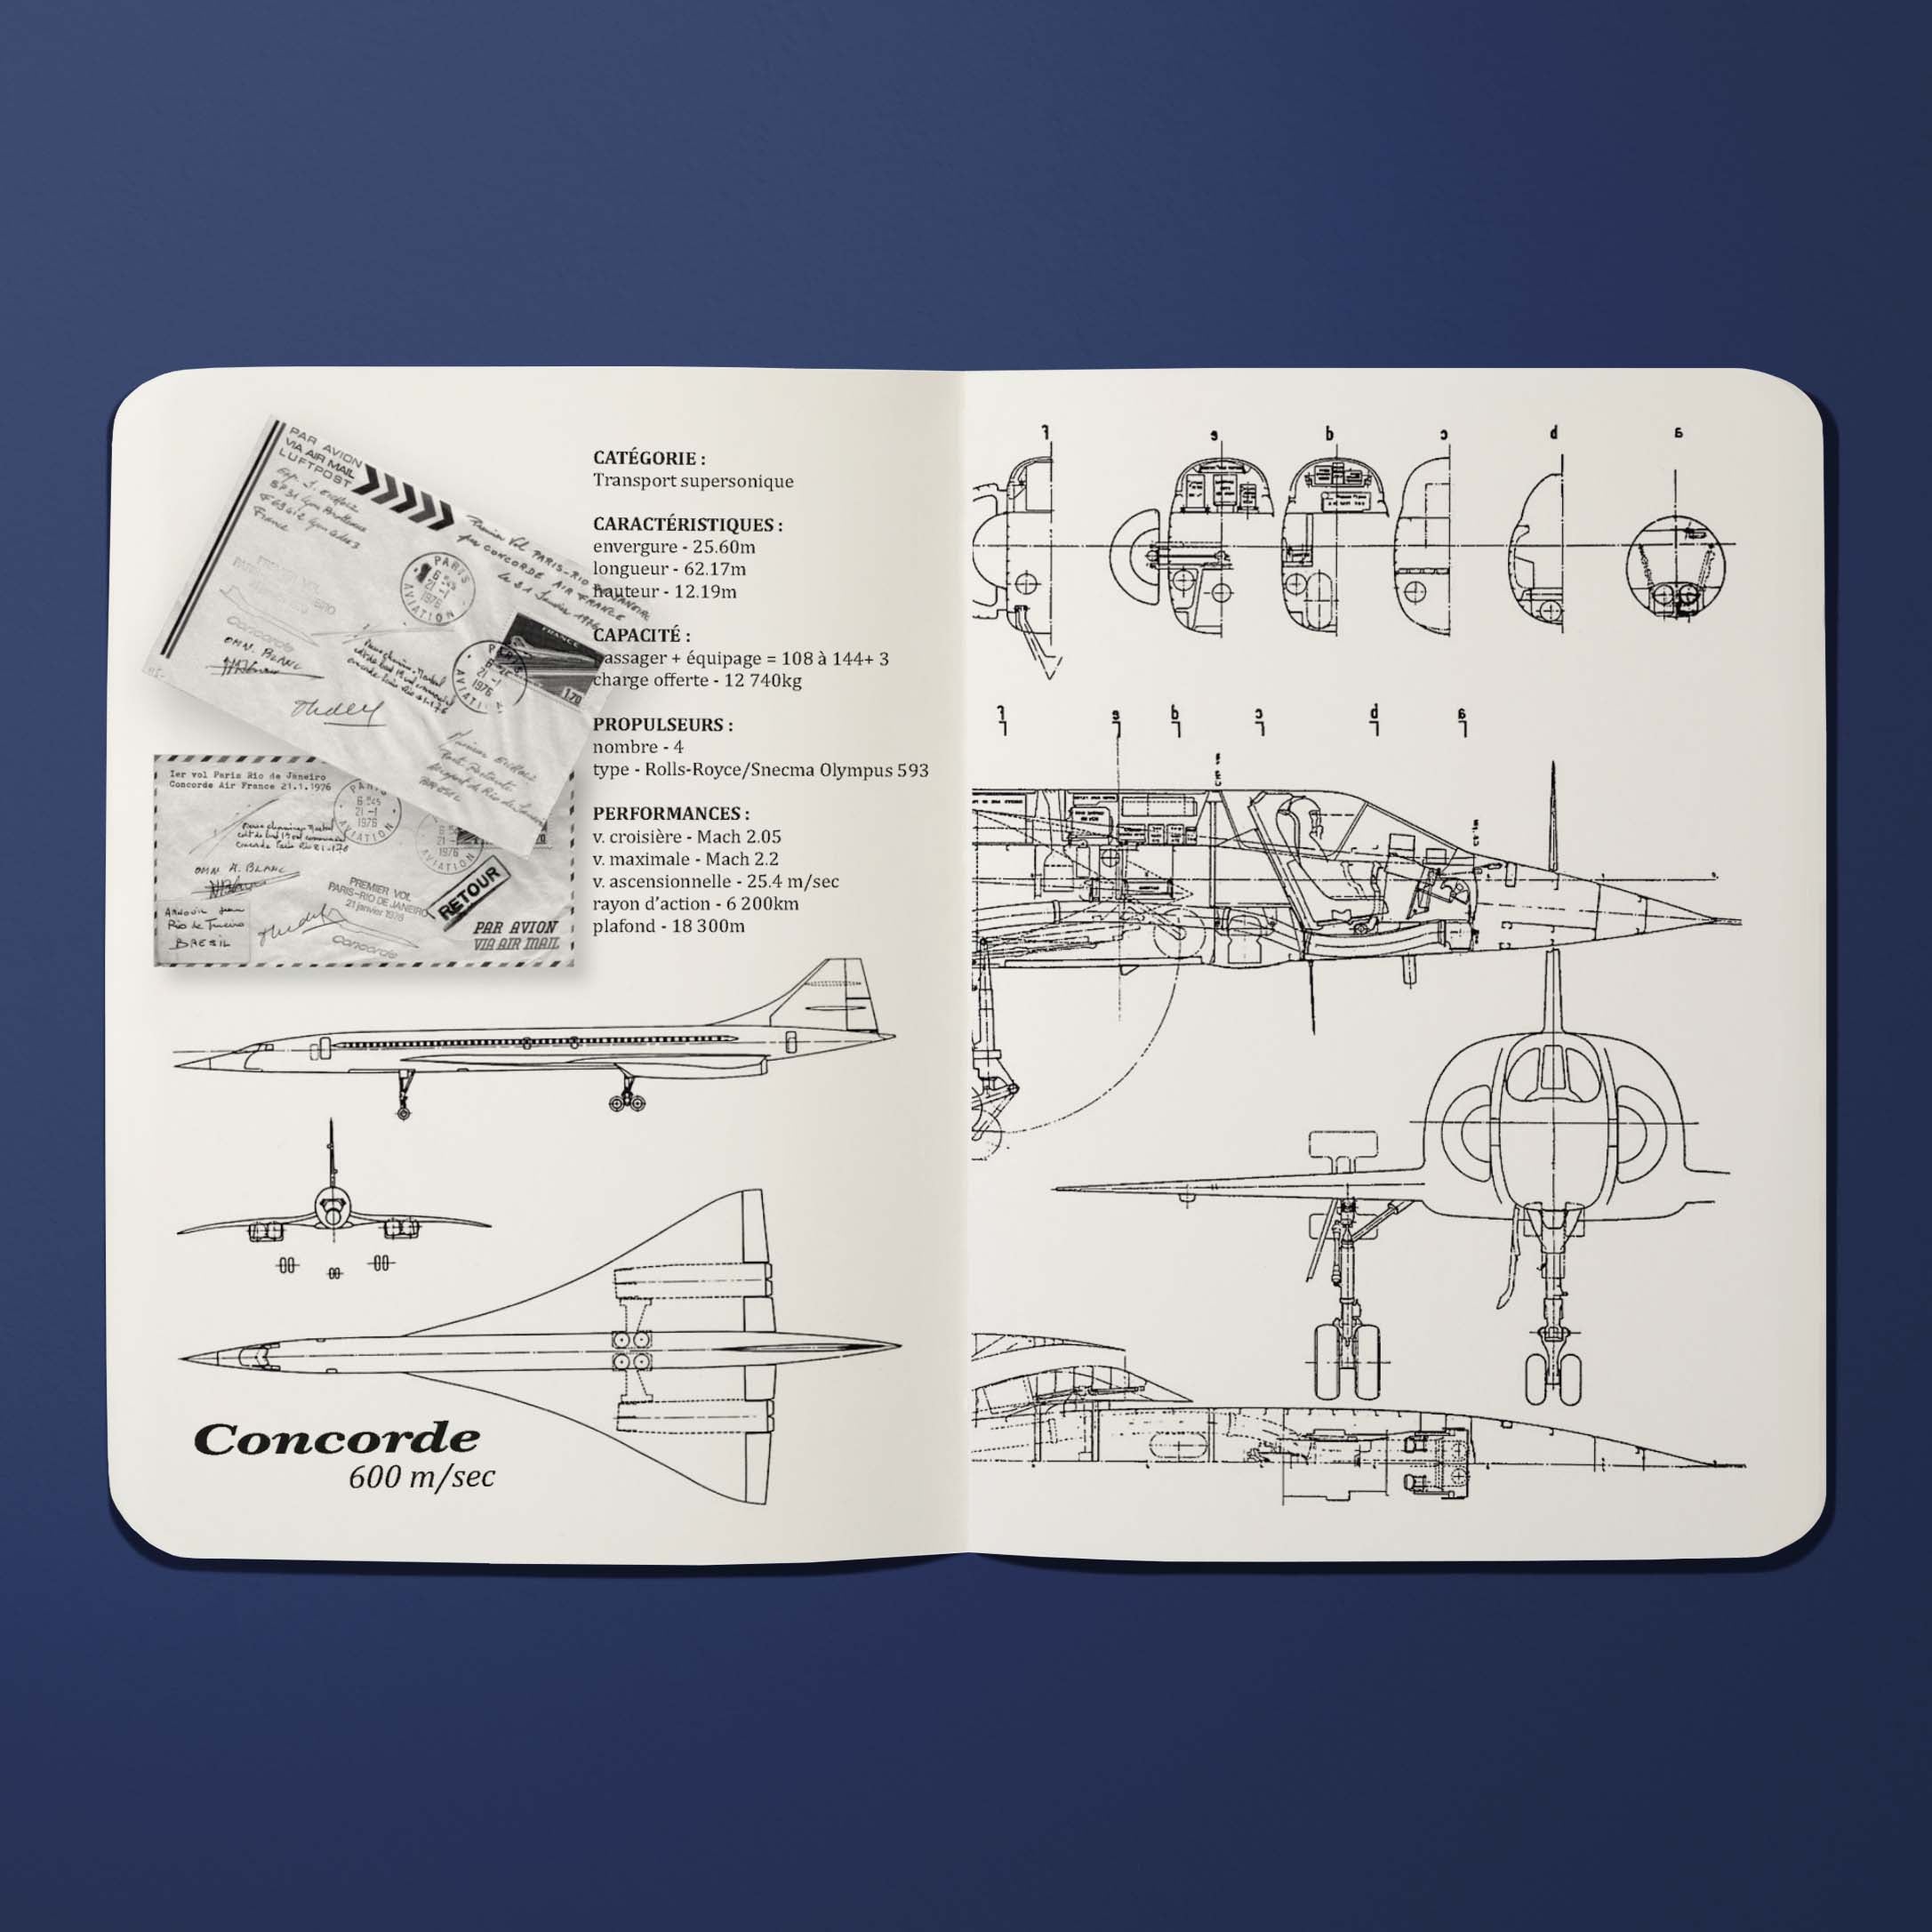 Air France Legend Concorde Timeline Notebook